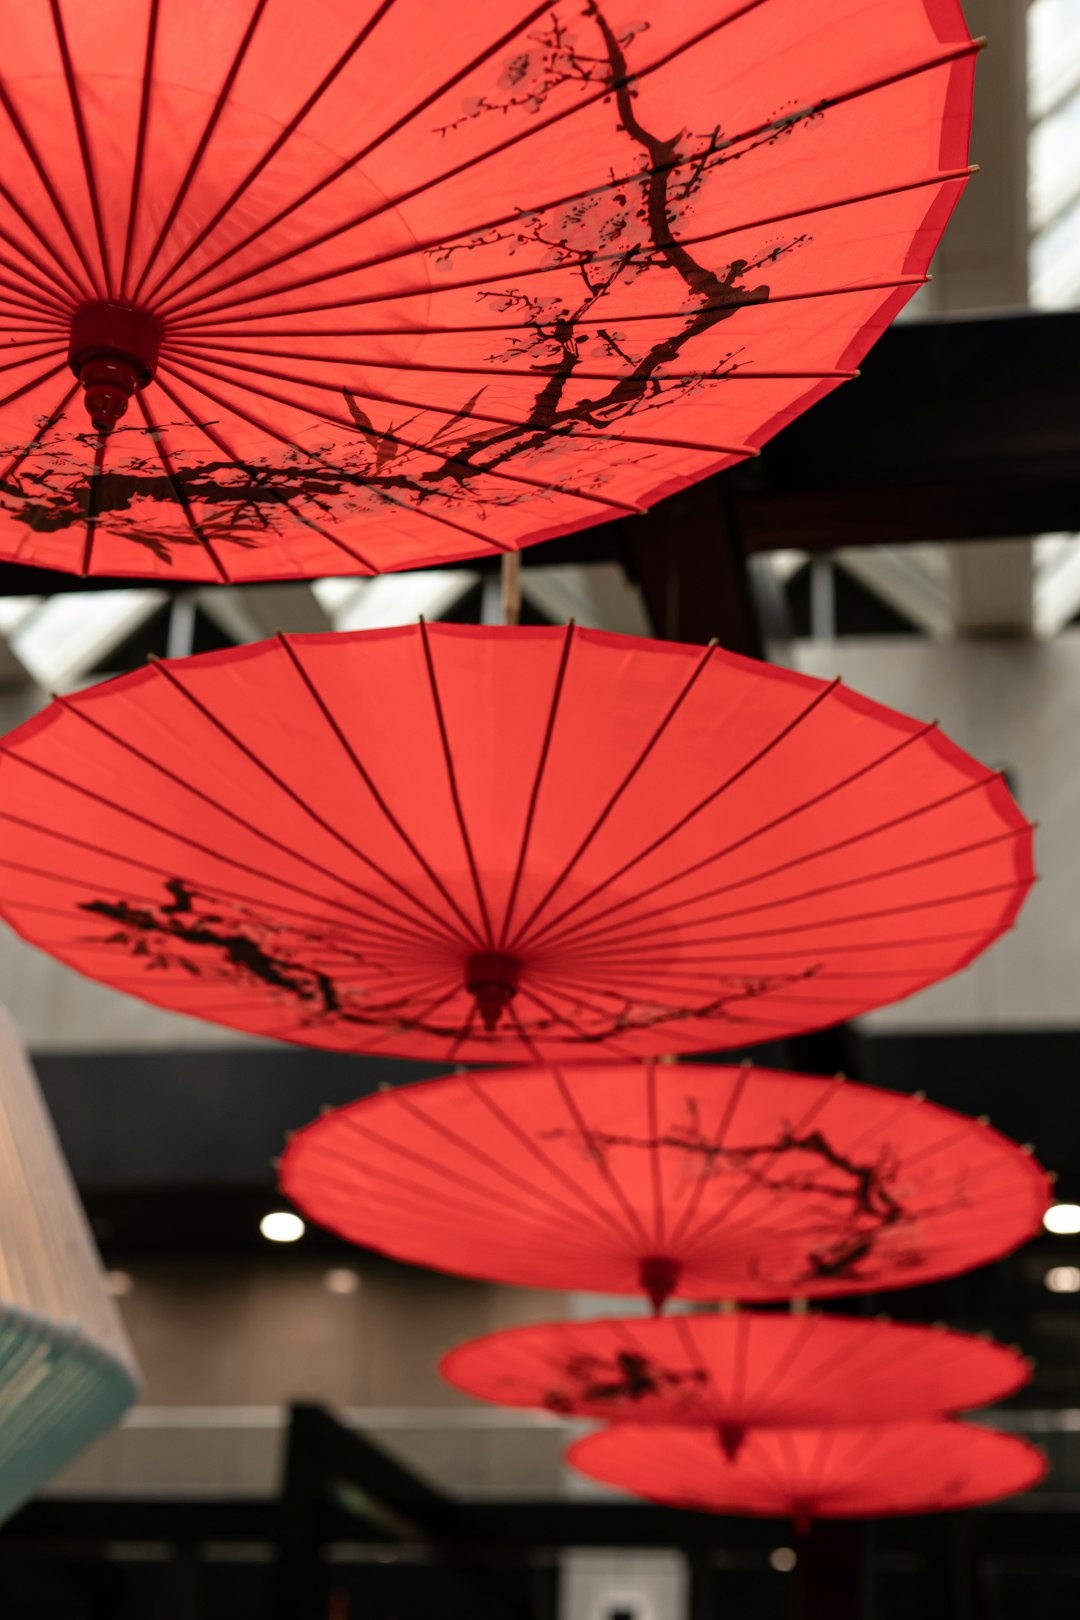 red umbrella in shallow focus lens